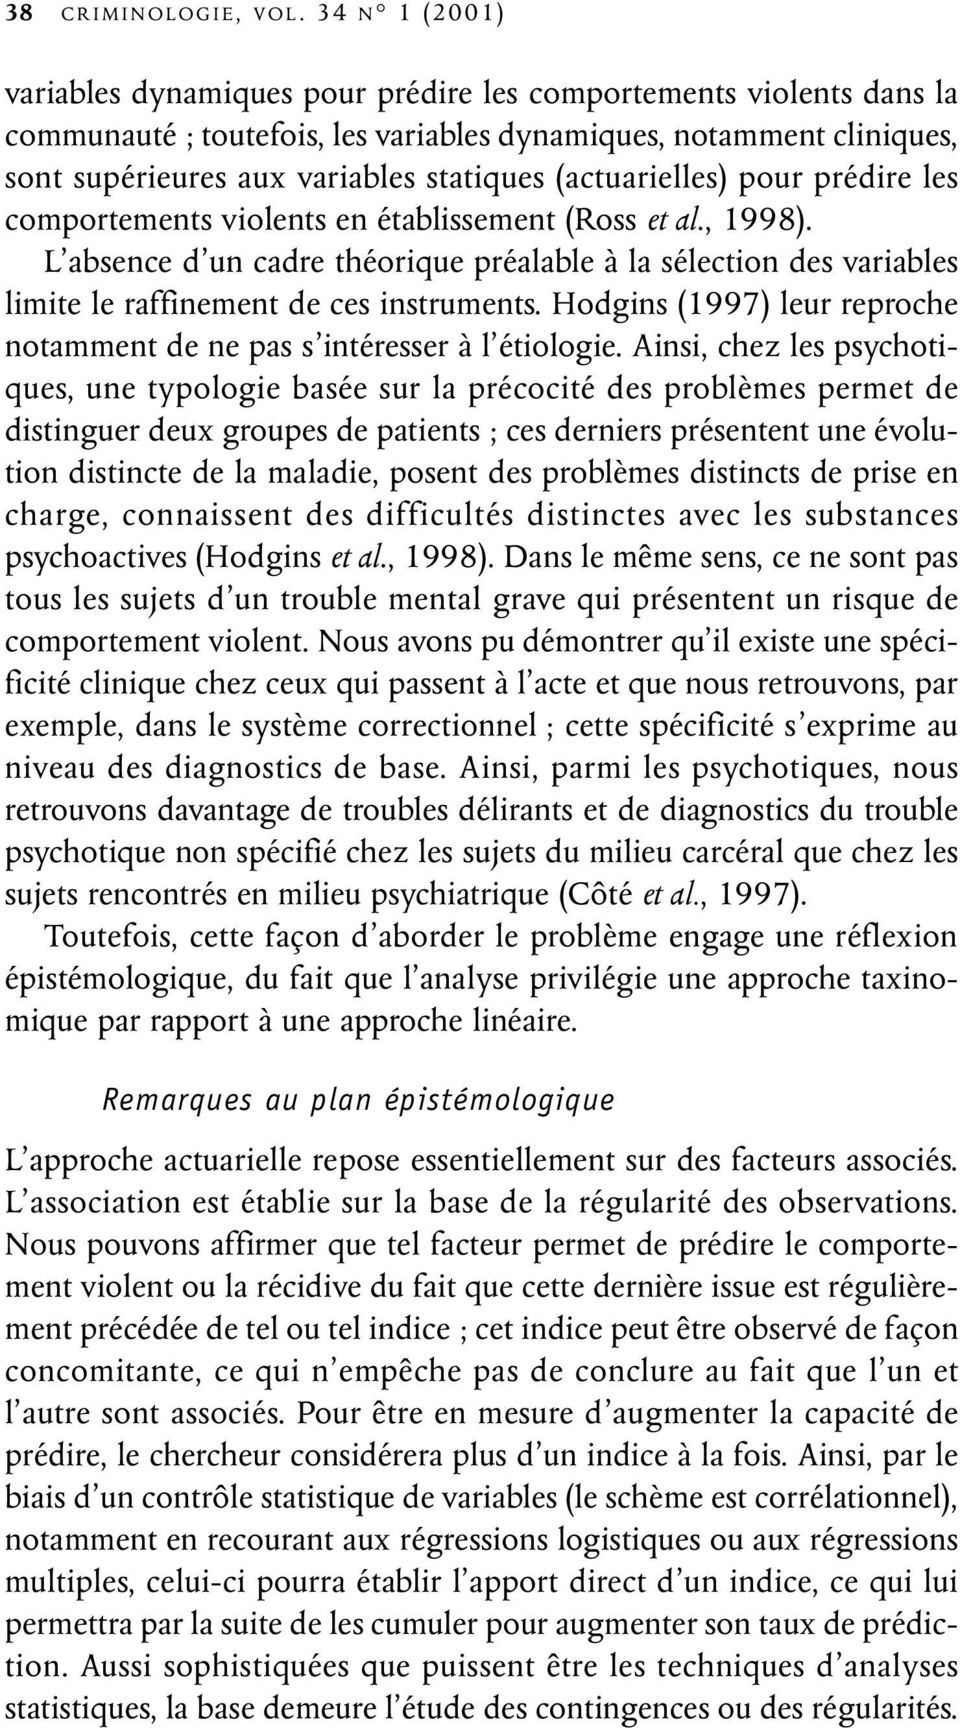 (actuarielles) pour prédire les comportements violents en établissement (Ross et al., 1998).